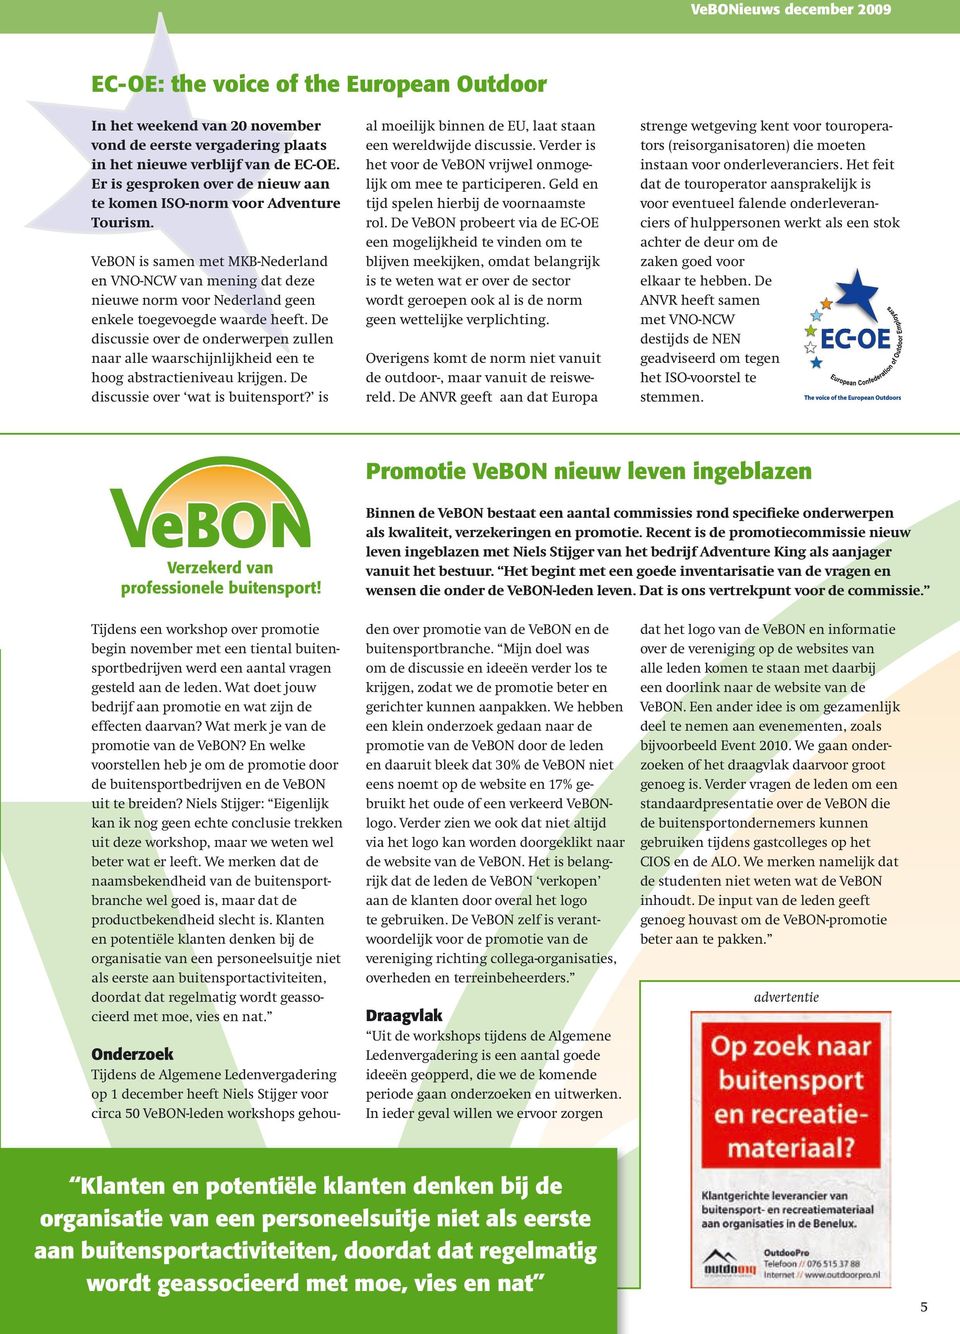 VeBON is samen met MKB-Nederland en VNO-NCW van mening dat deze nieuwe norm voor Nederland geen enkele toegevoegde waarde heeft.